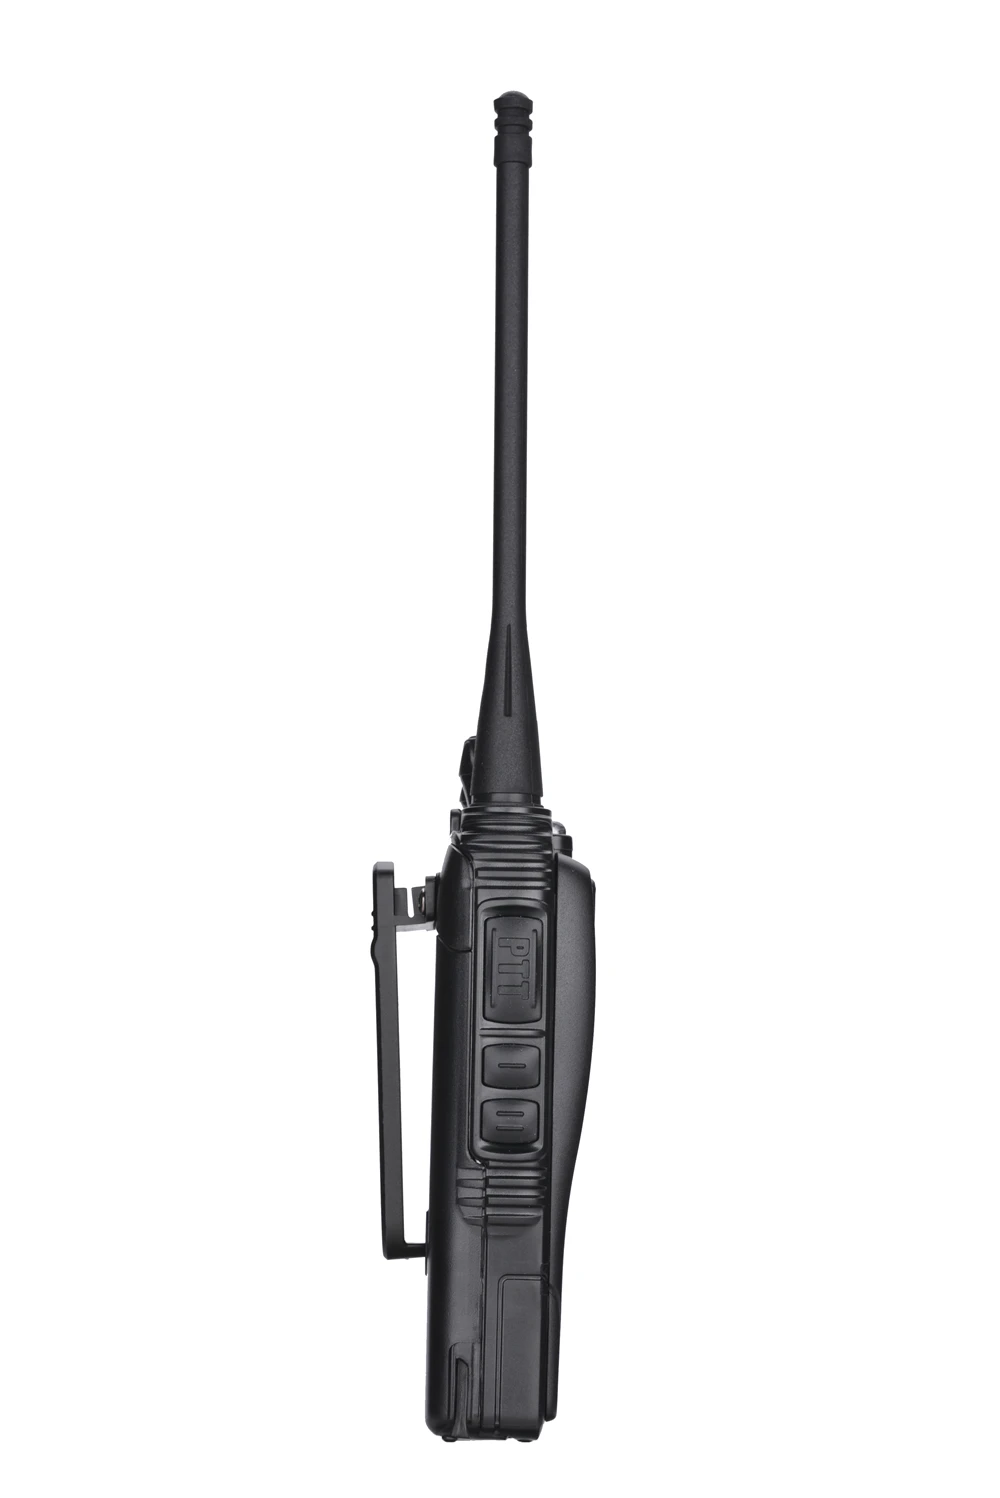 2 шт. 100% оригинал Baofeng радио Comunicador BF-K5 двухстороннее радио сканер радио Statio Baofeng радио Amador Cb радио 27 МГц